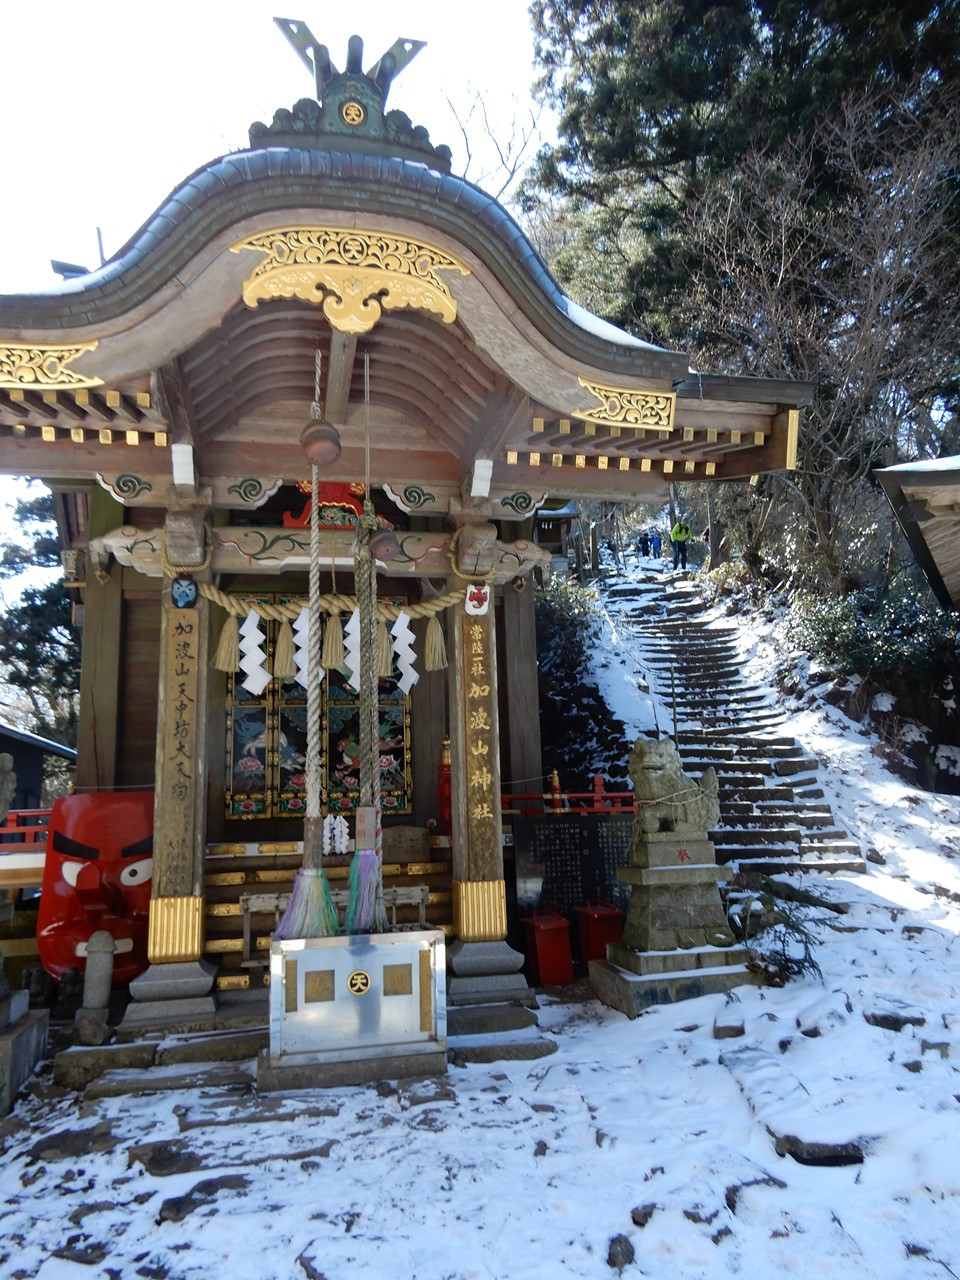 再び加波山神社の拝殿